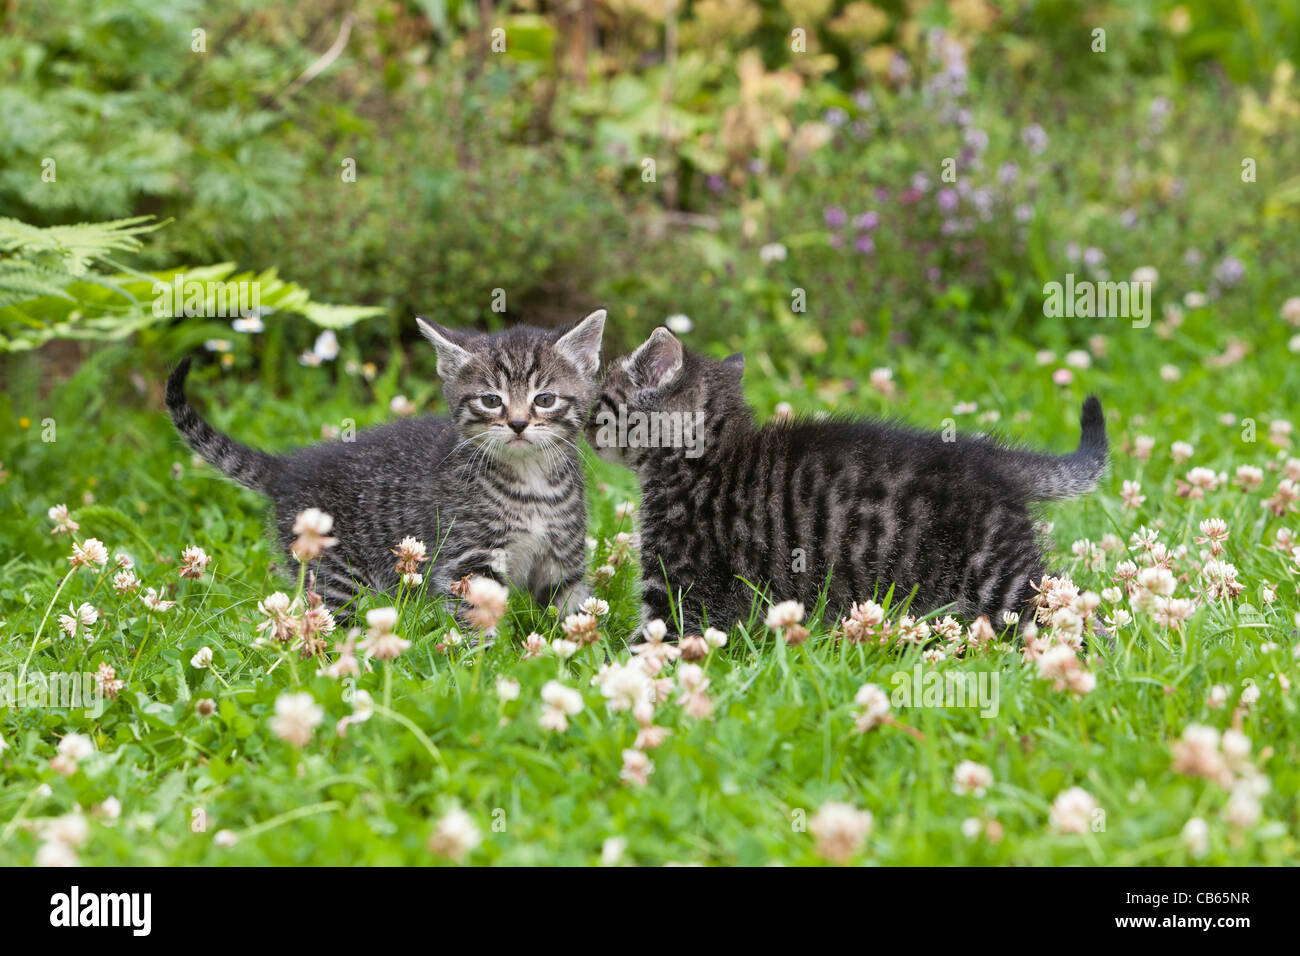 Kittens, two walking across garden lawn, Lower Saxony, Germany Stock Photo